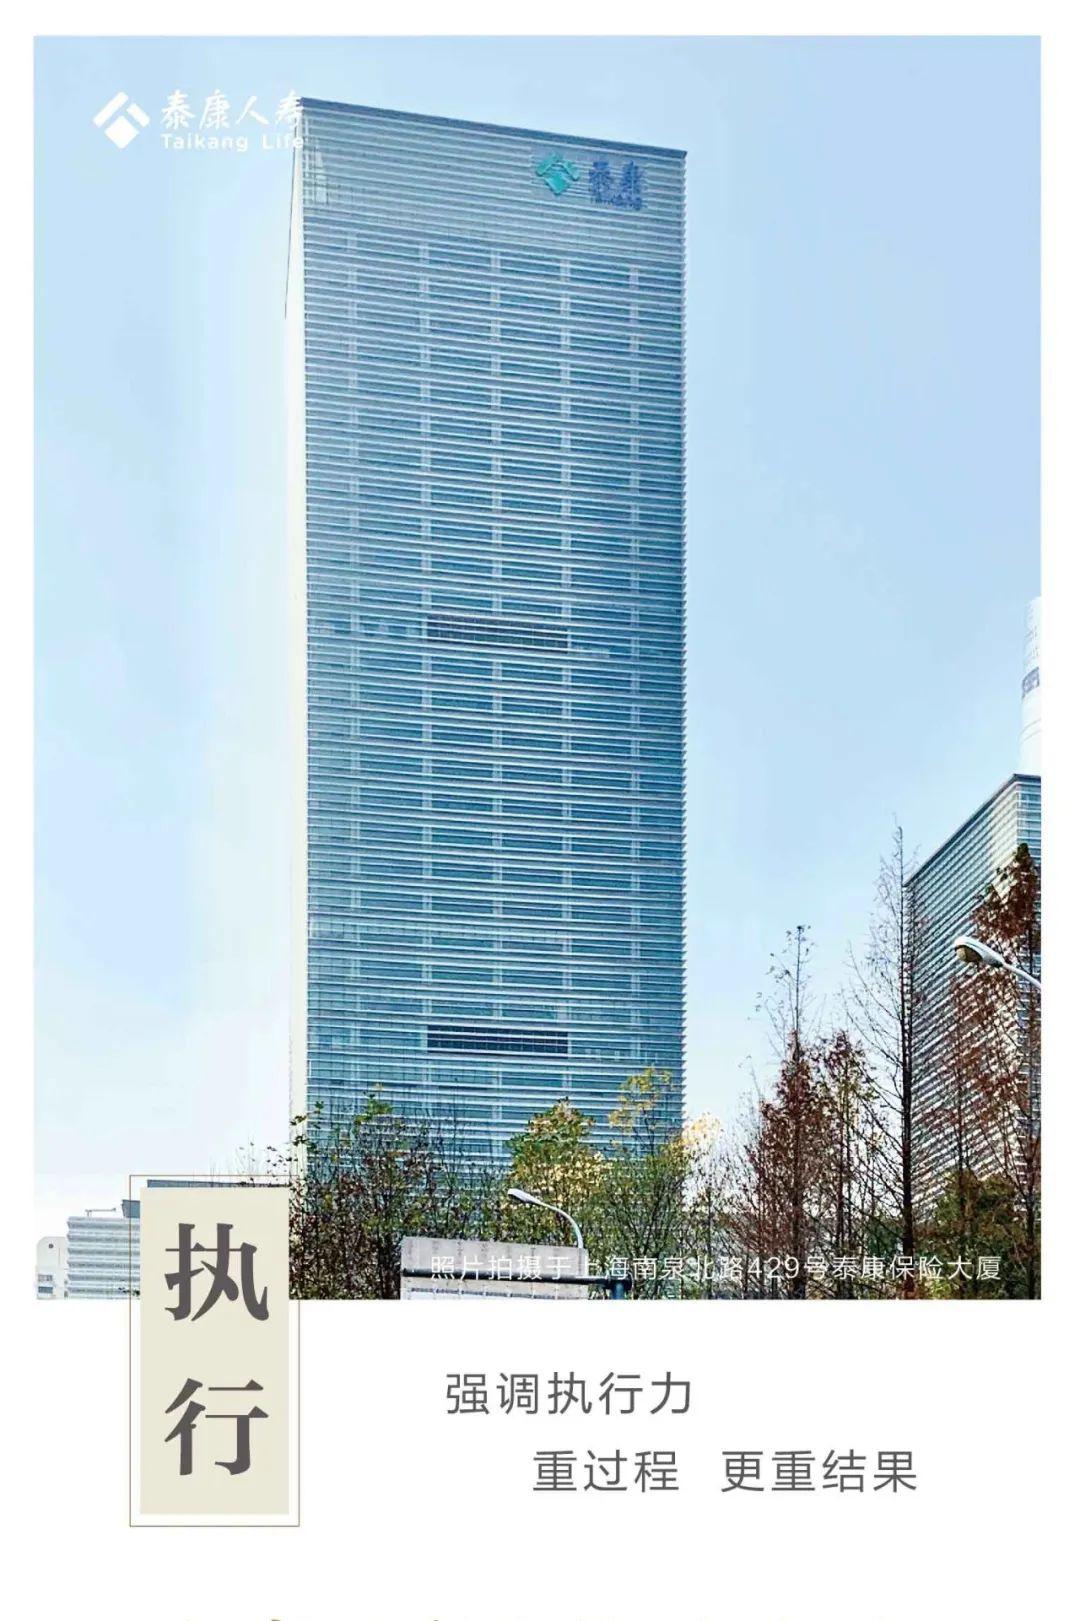 泰康人寿上海分公司成立二十周年不忘初心